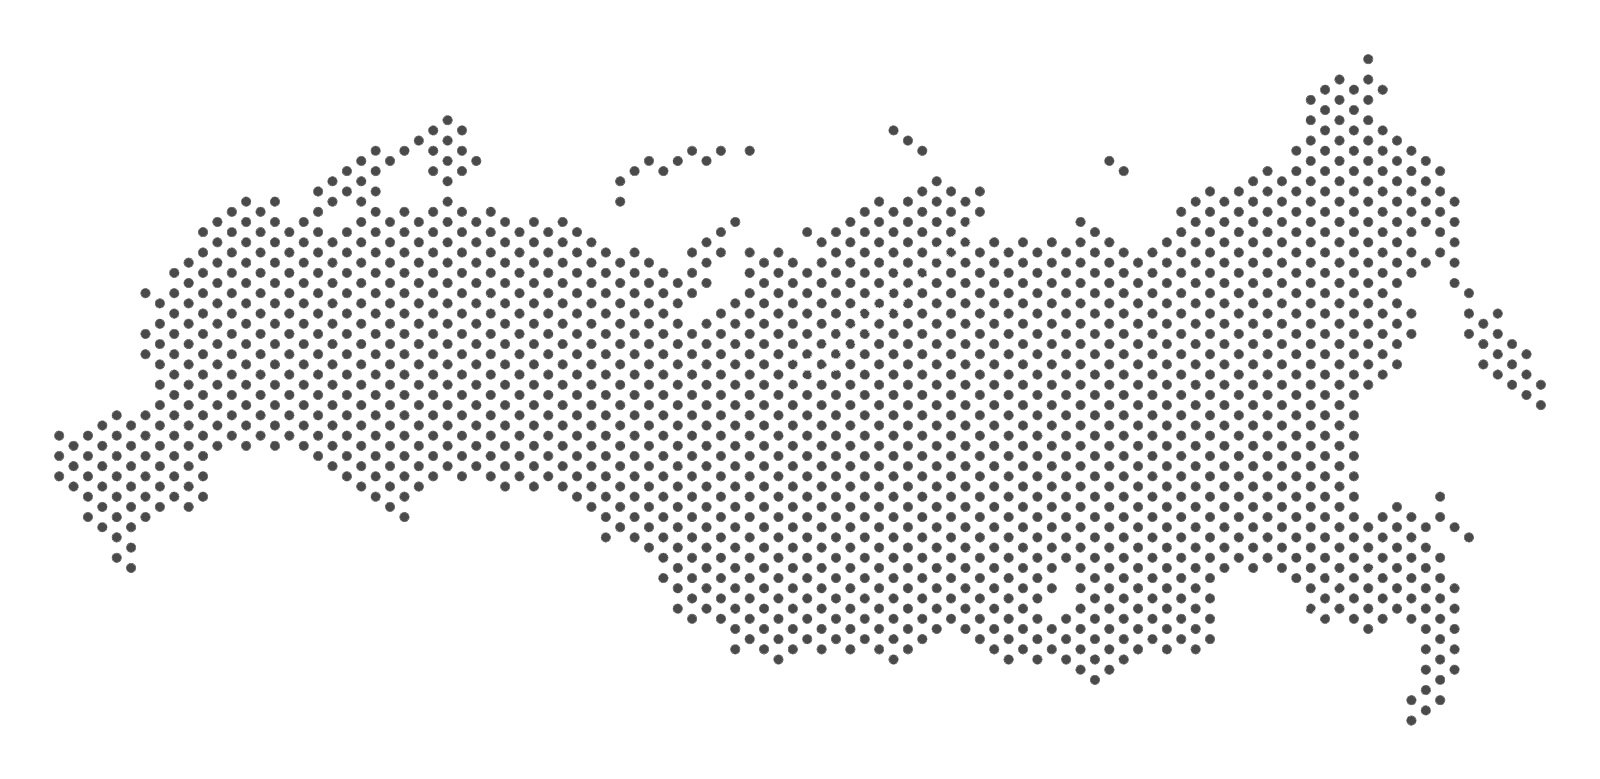 Карта РФ С точками. Очертания России на прозрачном фоне. Карта РФ вектор точками. Карта России точками вектор. Любая точка на карте